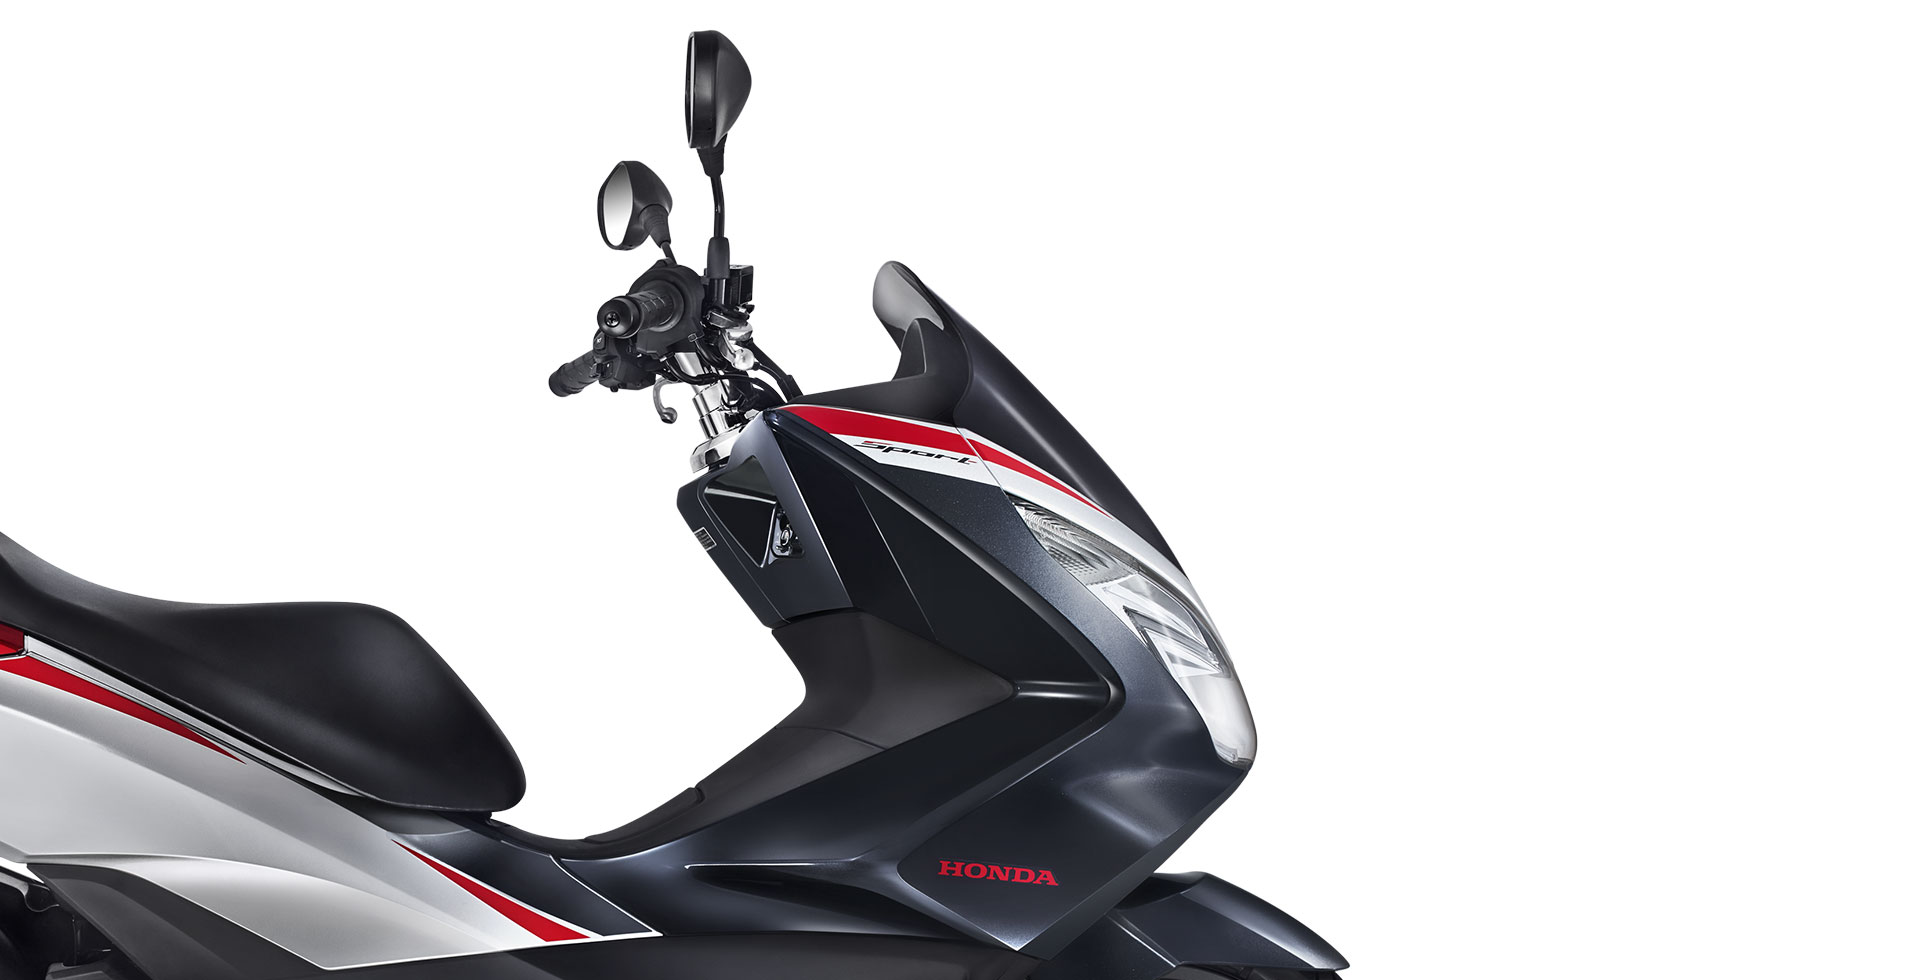 Honda PCX 150 2019